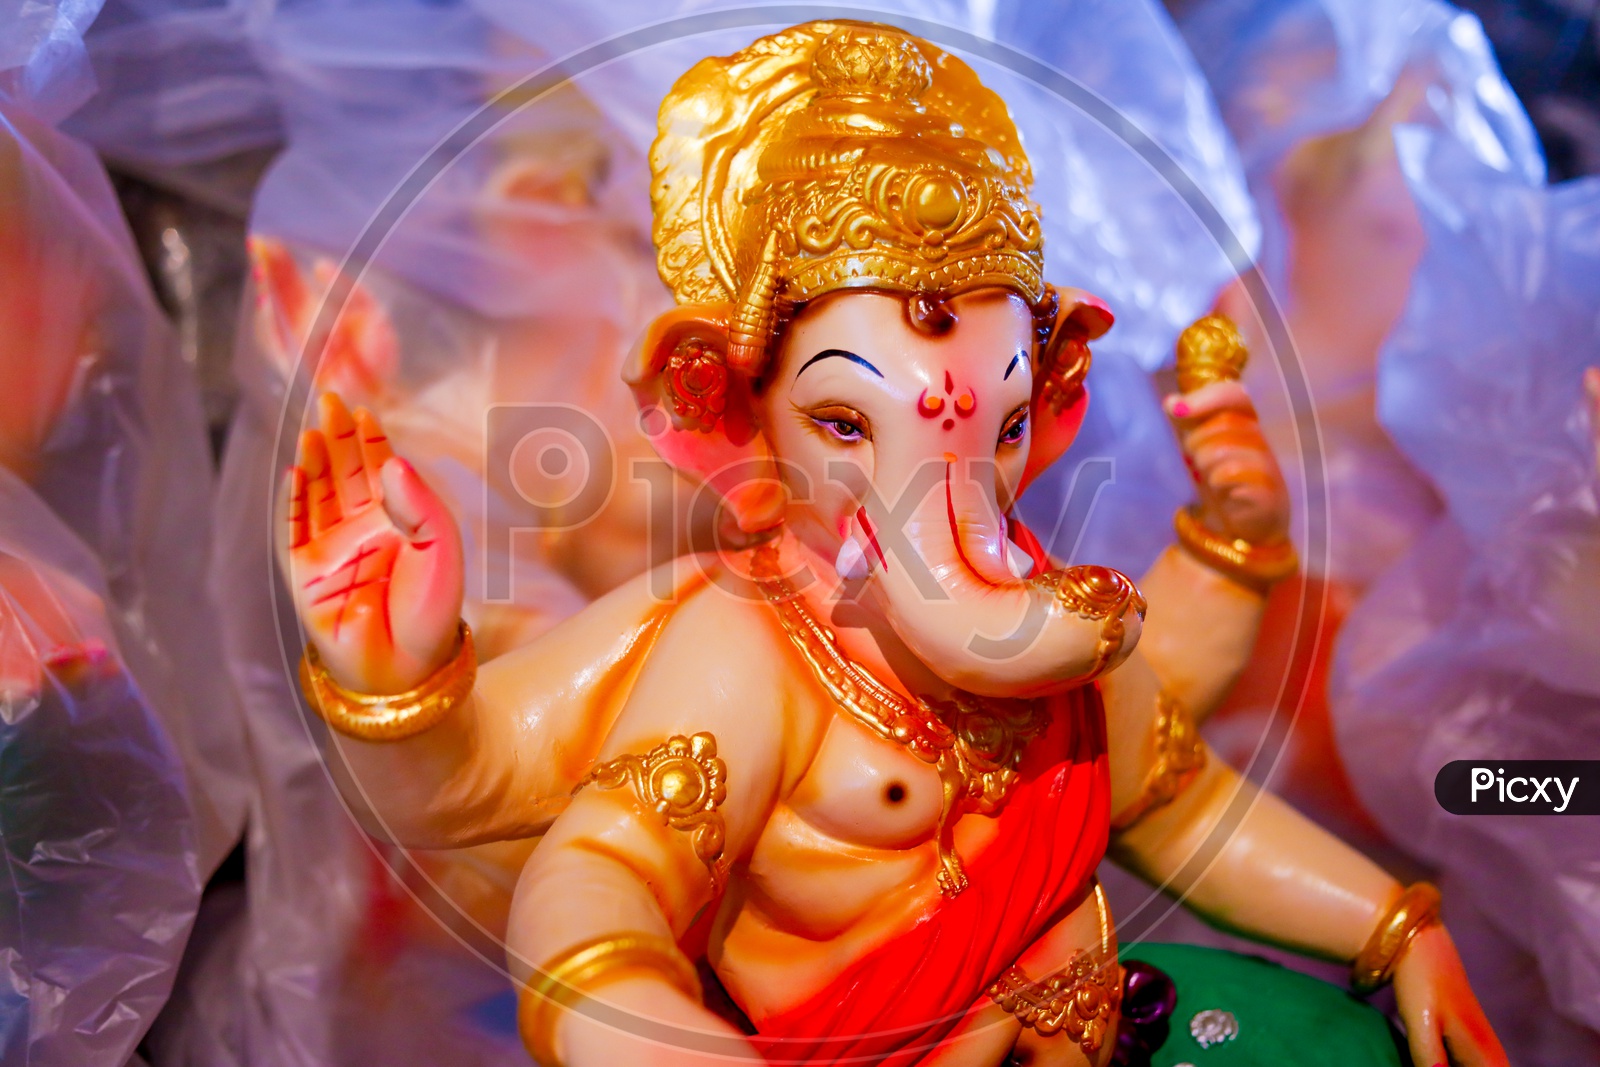 Photograph of Lord Ganesha Idol / Ganesh Idol